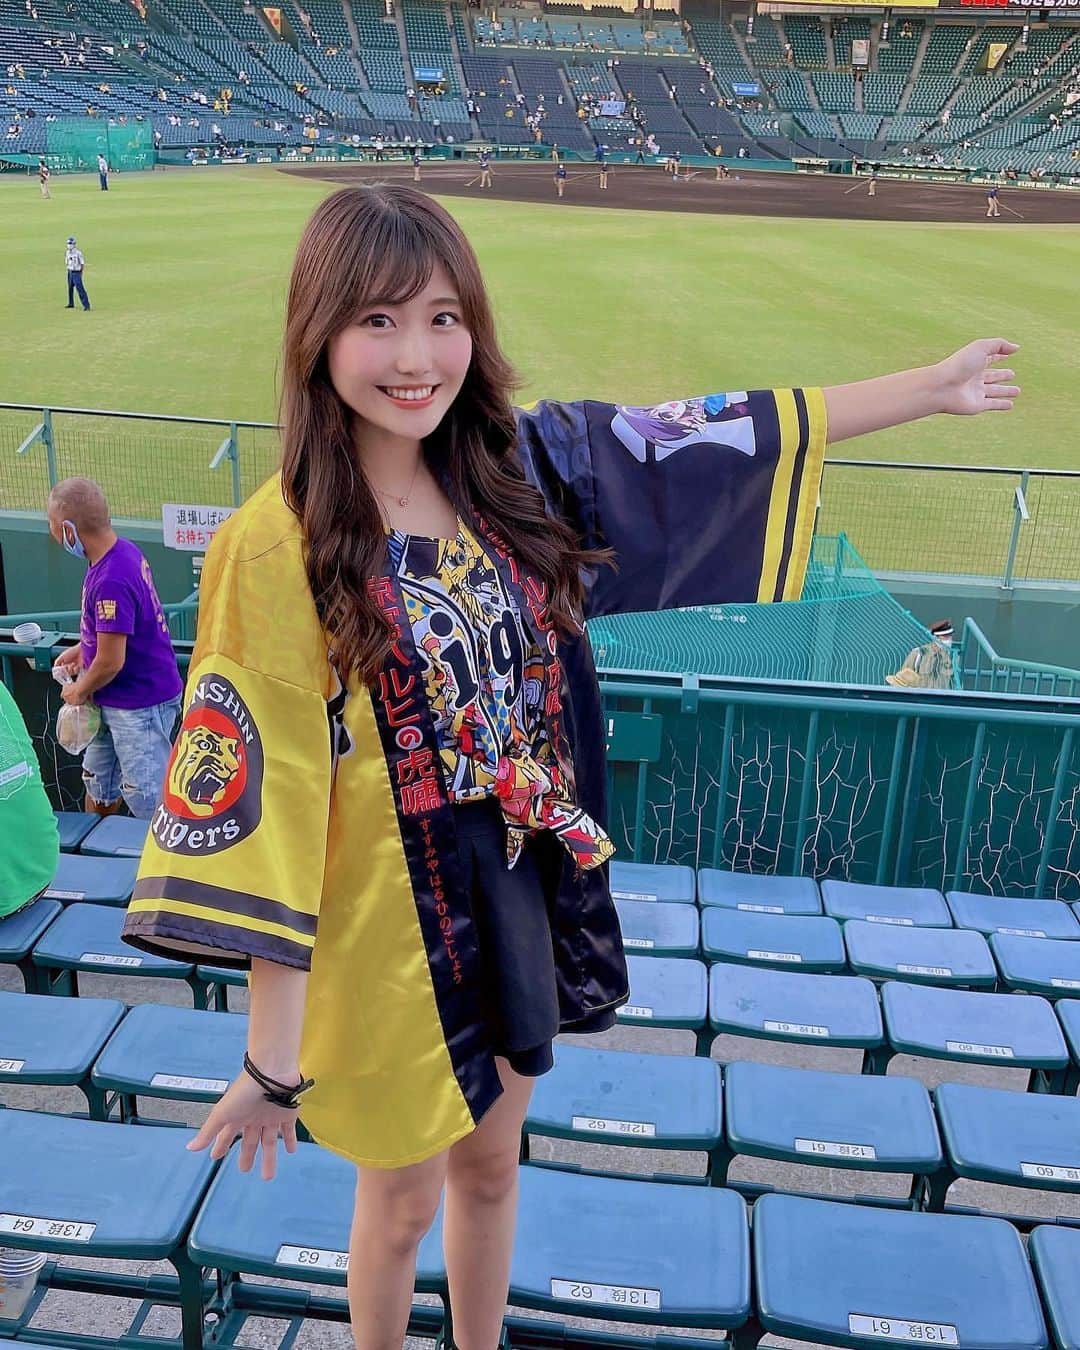 インスタ野球女子 公式アカウント さんのインスタグラム写真 インスタ野球女子 公式アカウント Instagram こんにちは 今日は タイガース女子 をご紹介していきます とっても美人さん ᵕᴗᵕ Minamiiii3721 さんのアカウントも是非覗い